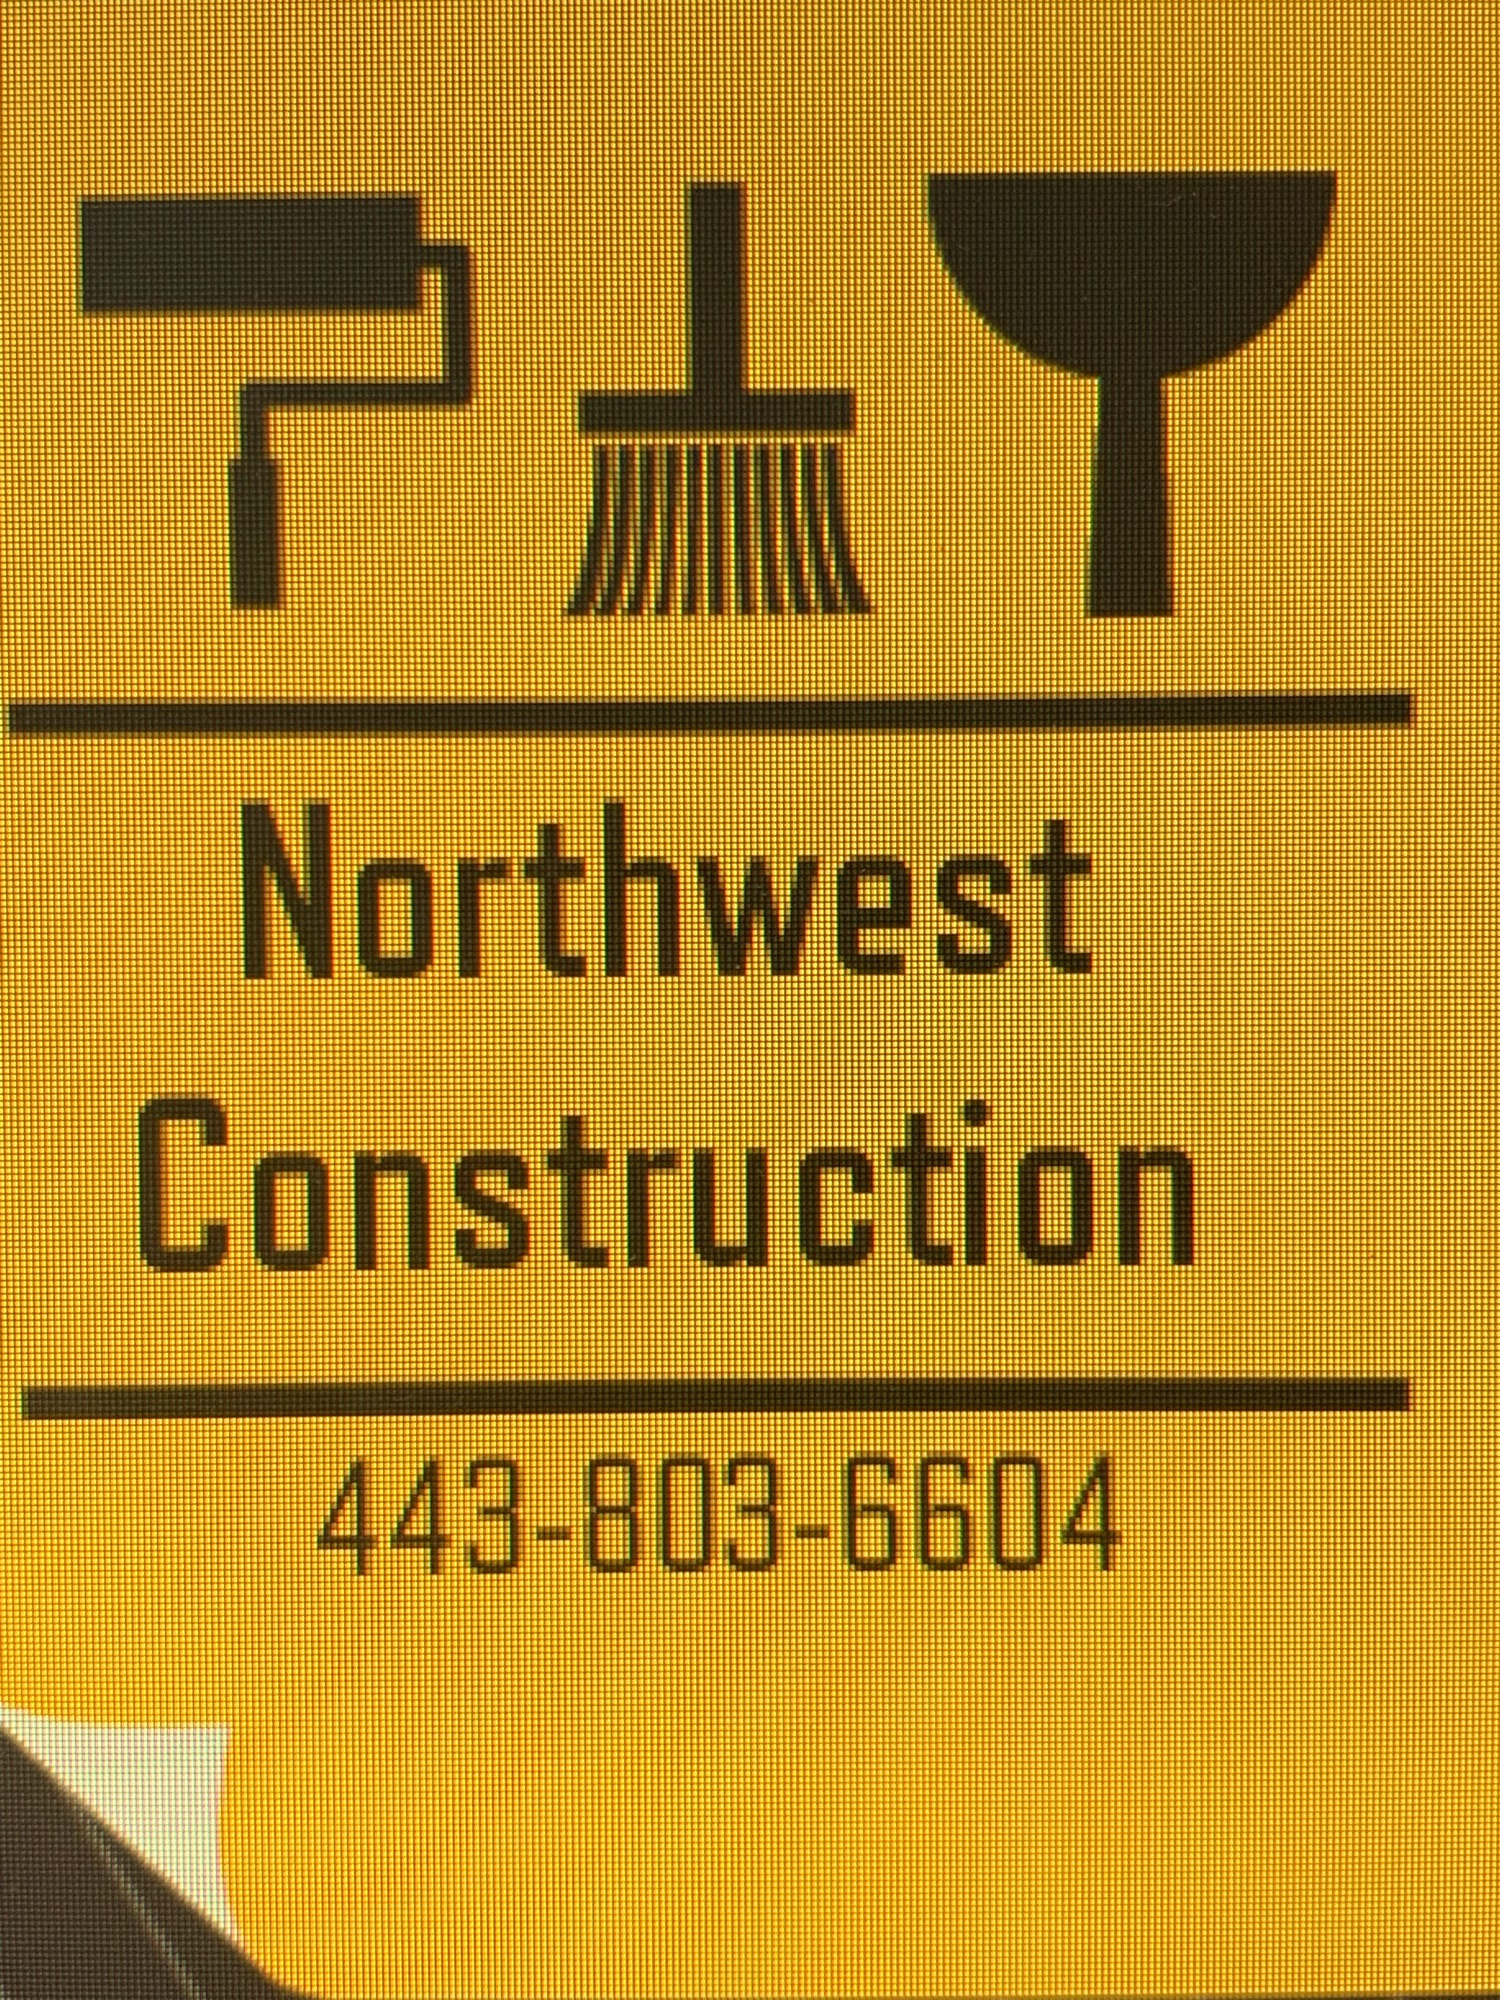 Northwest Construction Logo